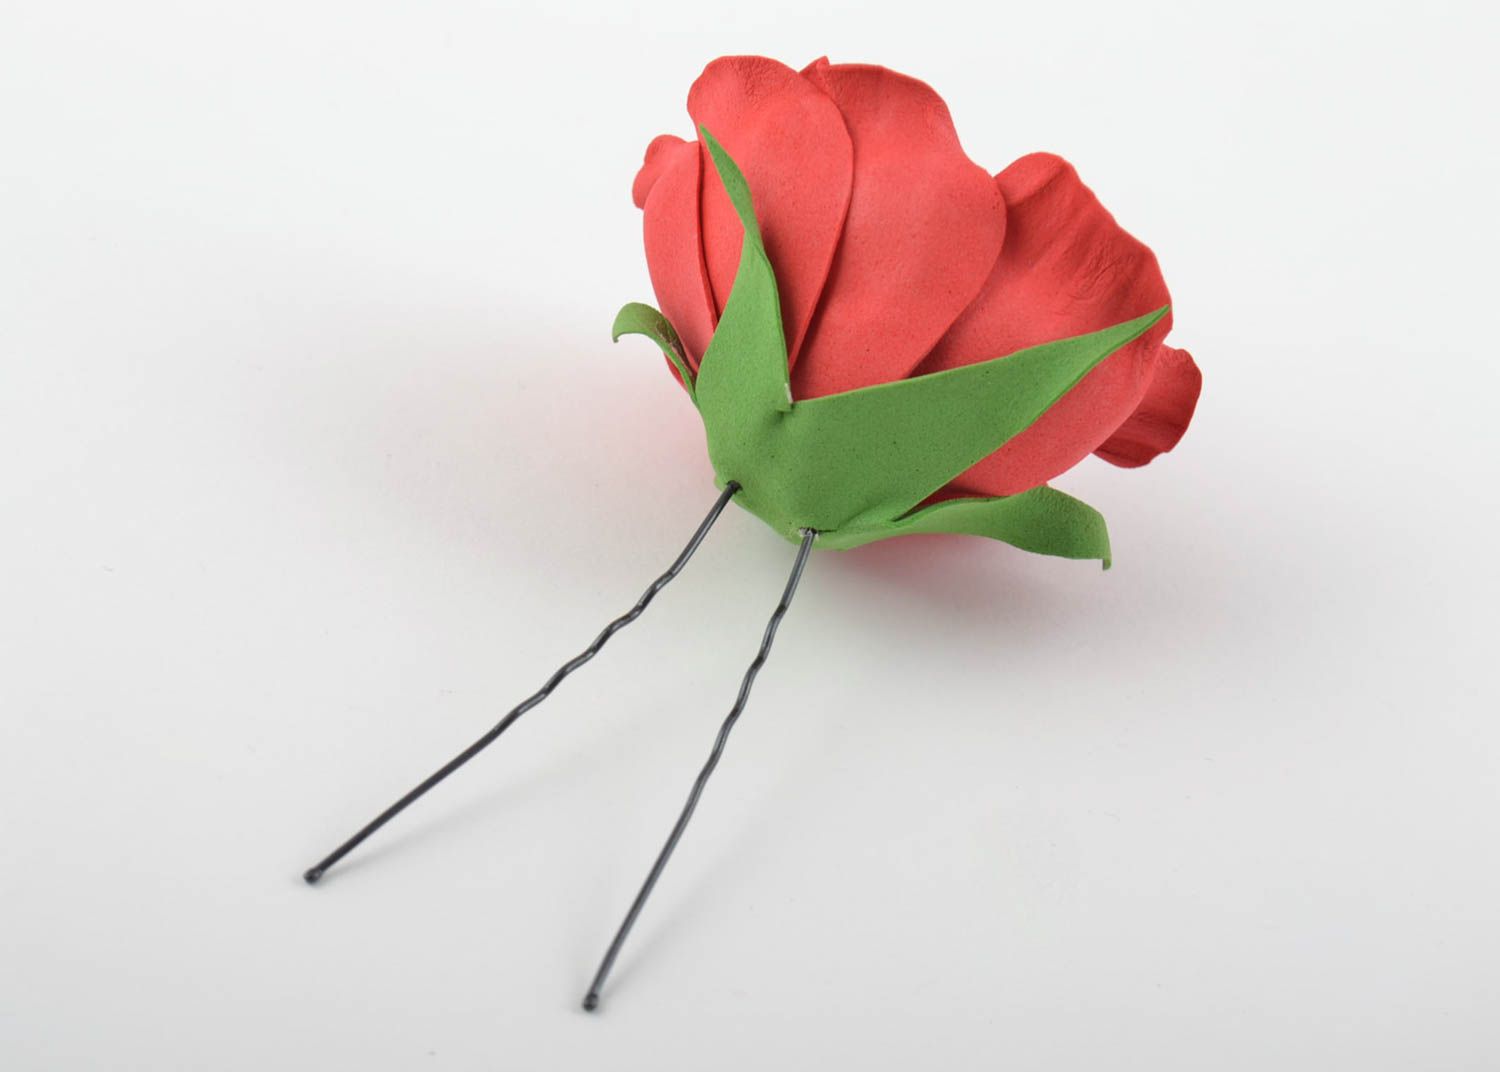 Шпилька из фоамирана с крупным цветком розы красная нарядная красивая хэнд мейд фото 10